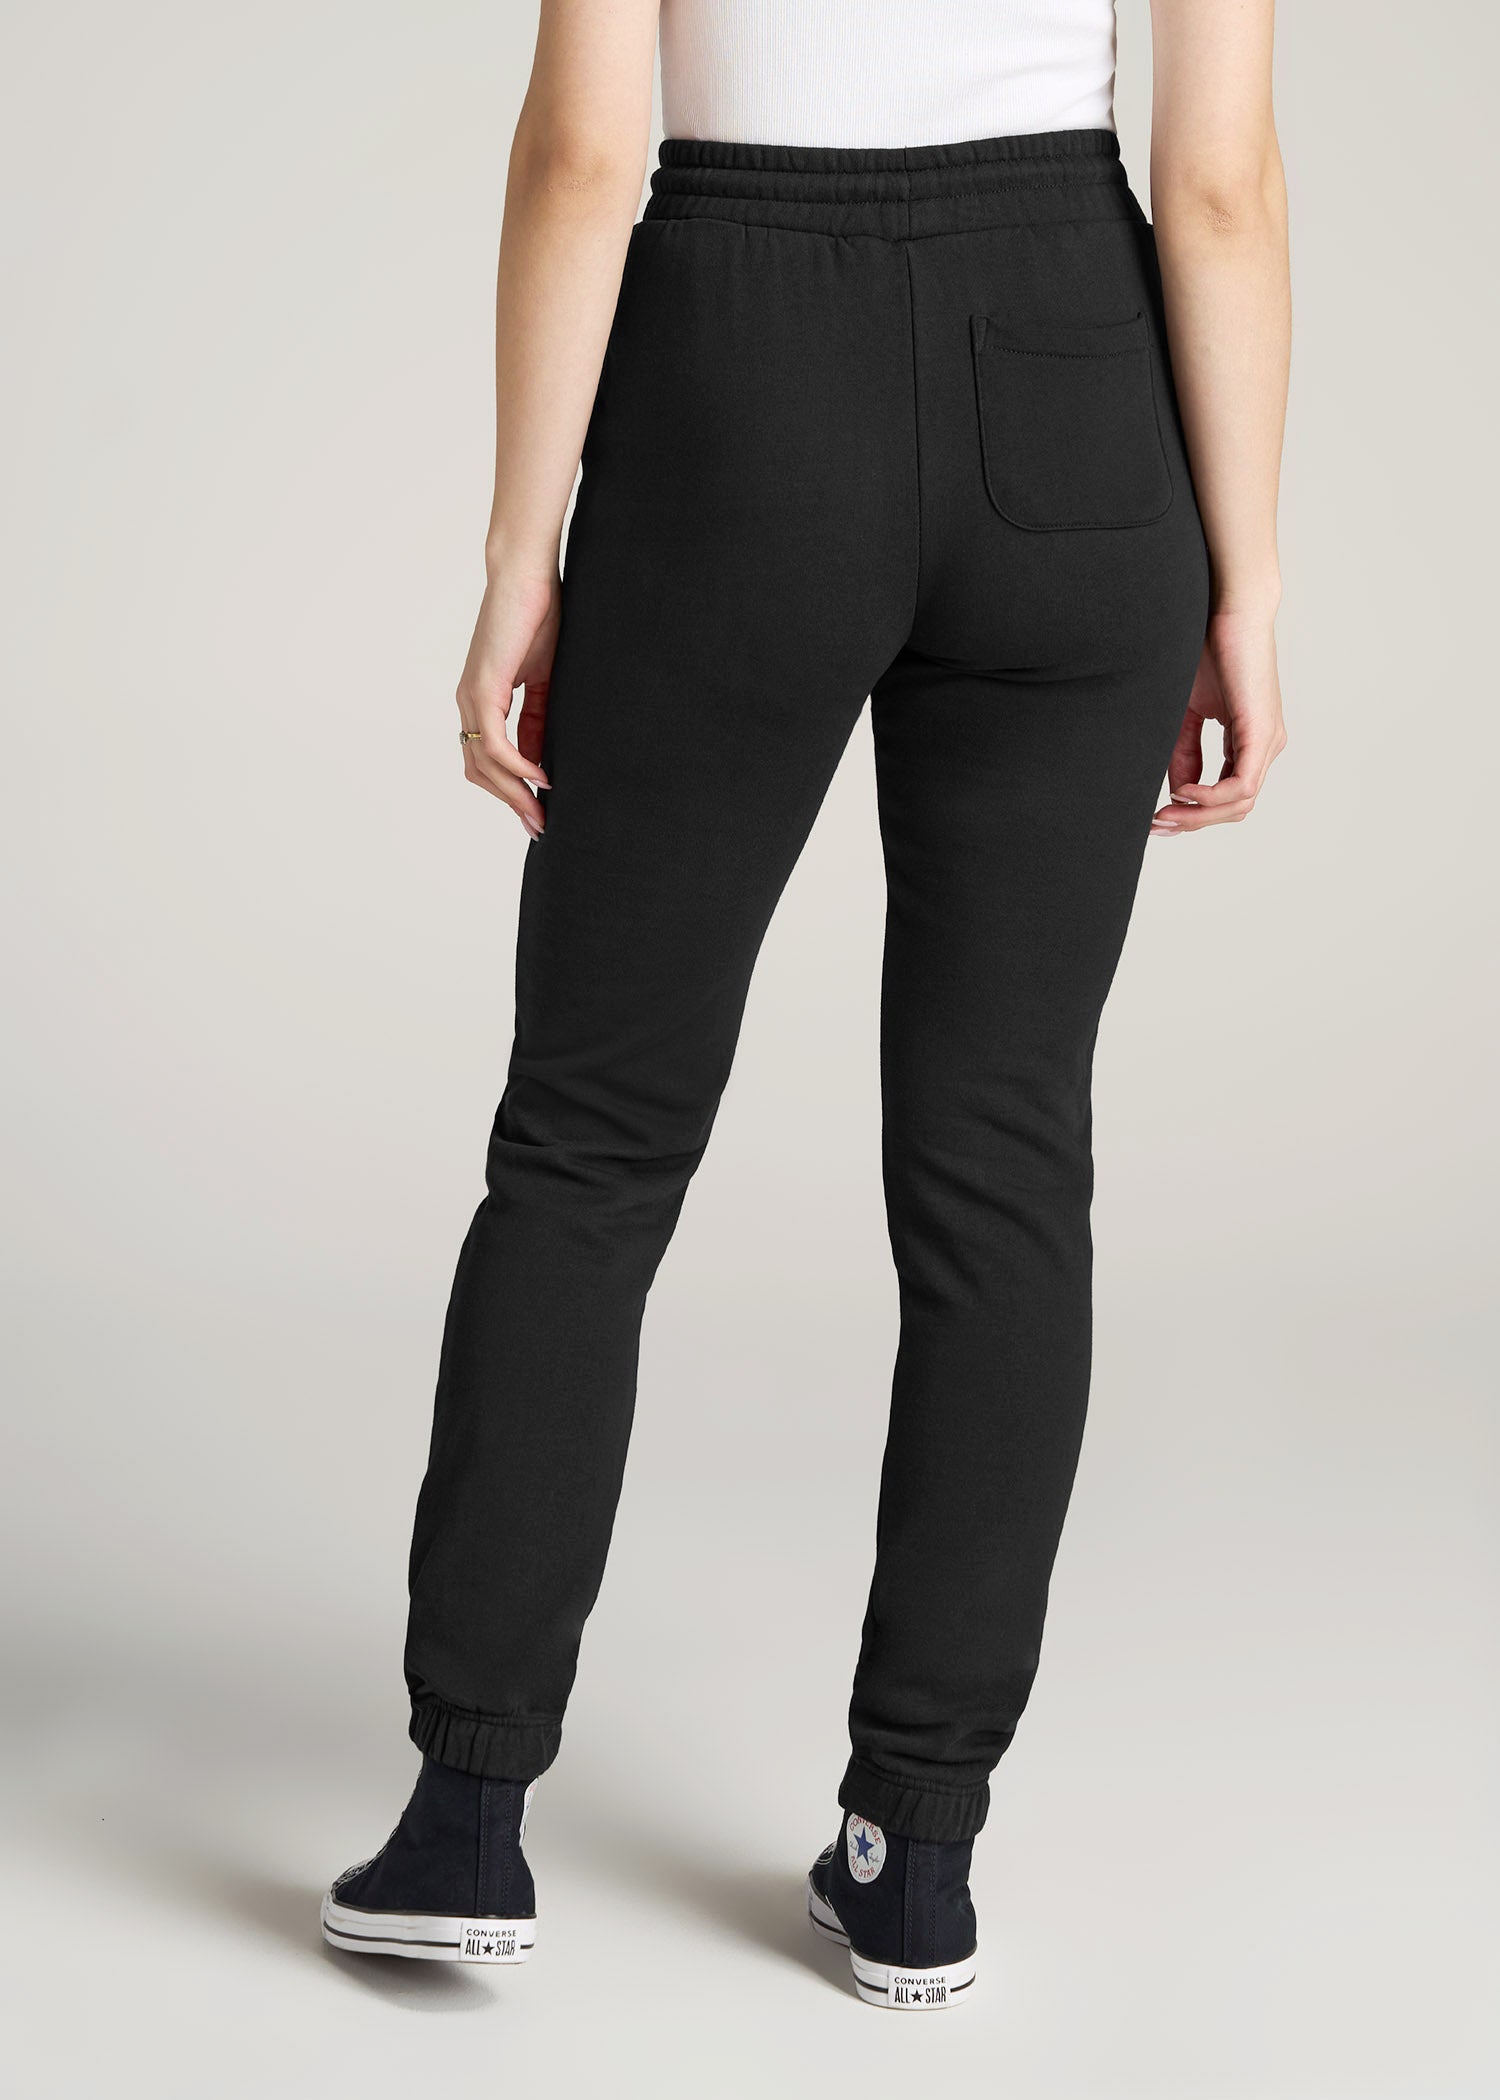 Wearever Fleece SLIM-FIT High-Waisted Women's Tall Sweatpants in Black